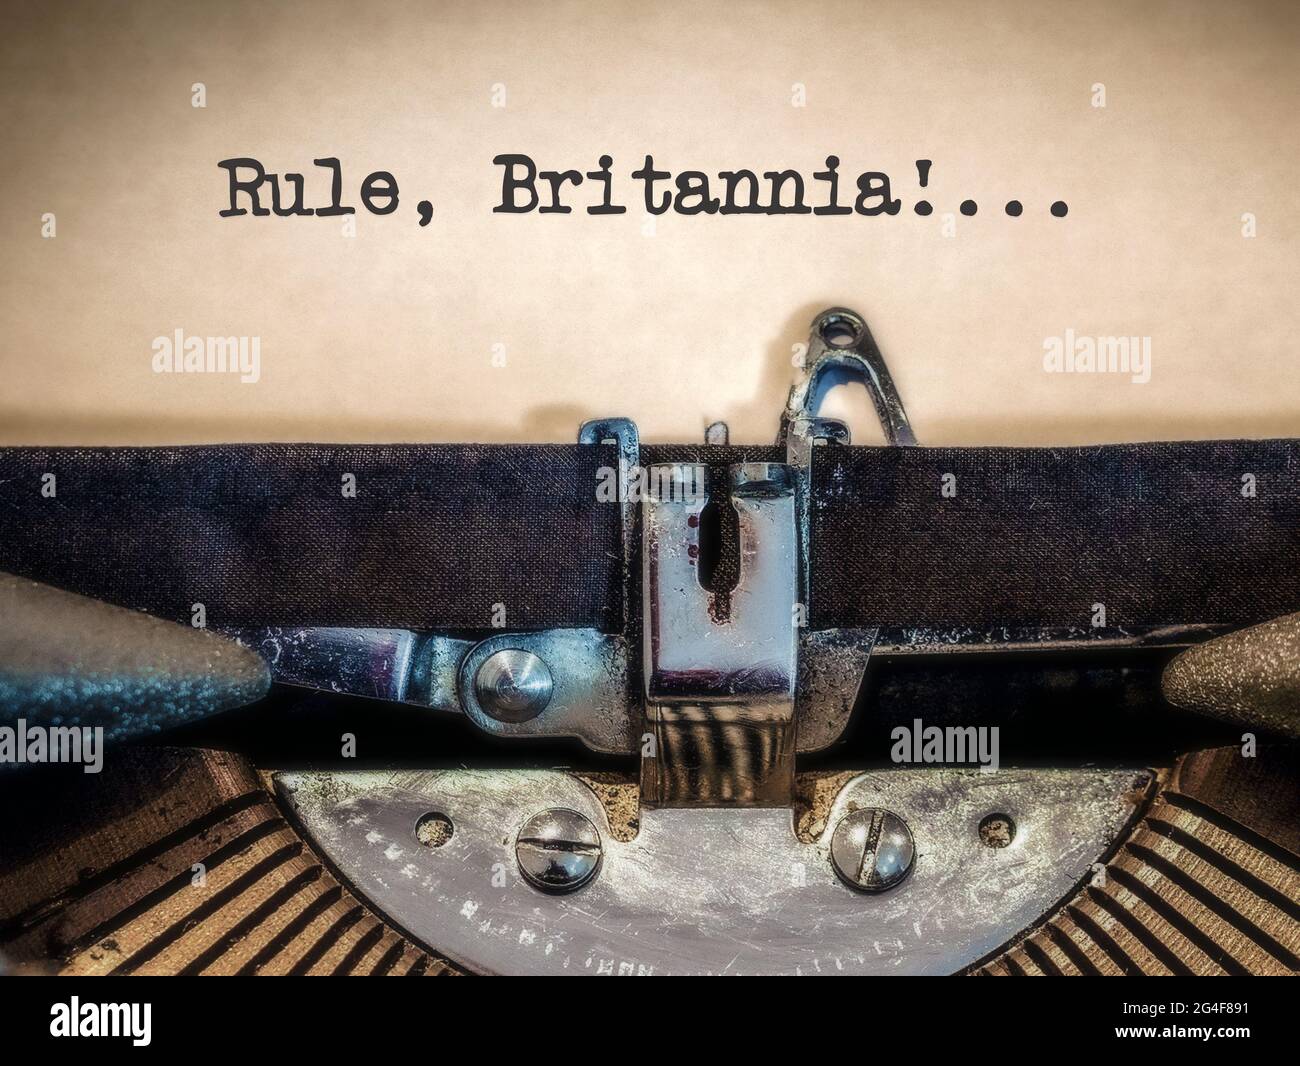 Rule, Britannia ! affiché sur une machine à écrire vintage Banque D'Images